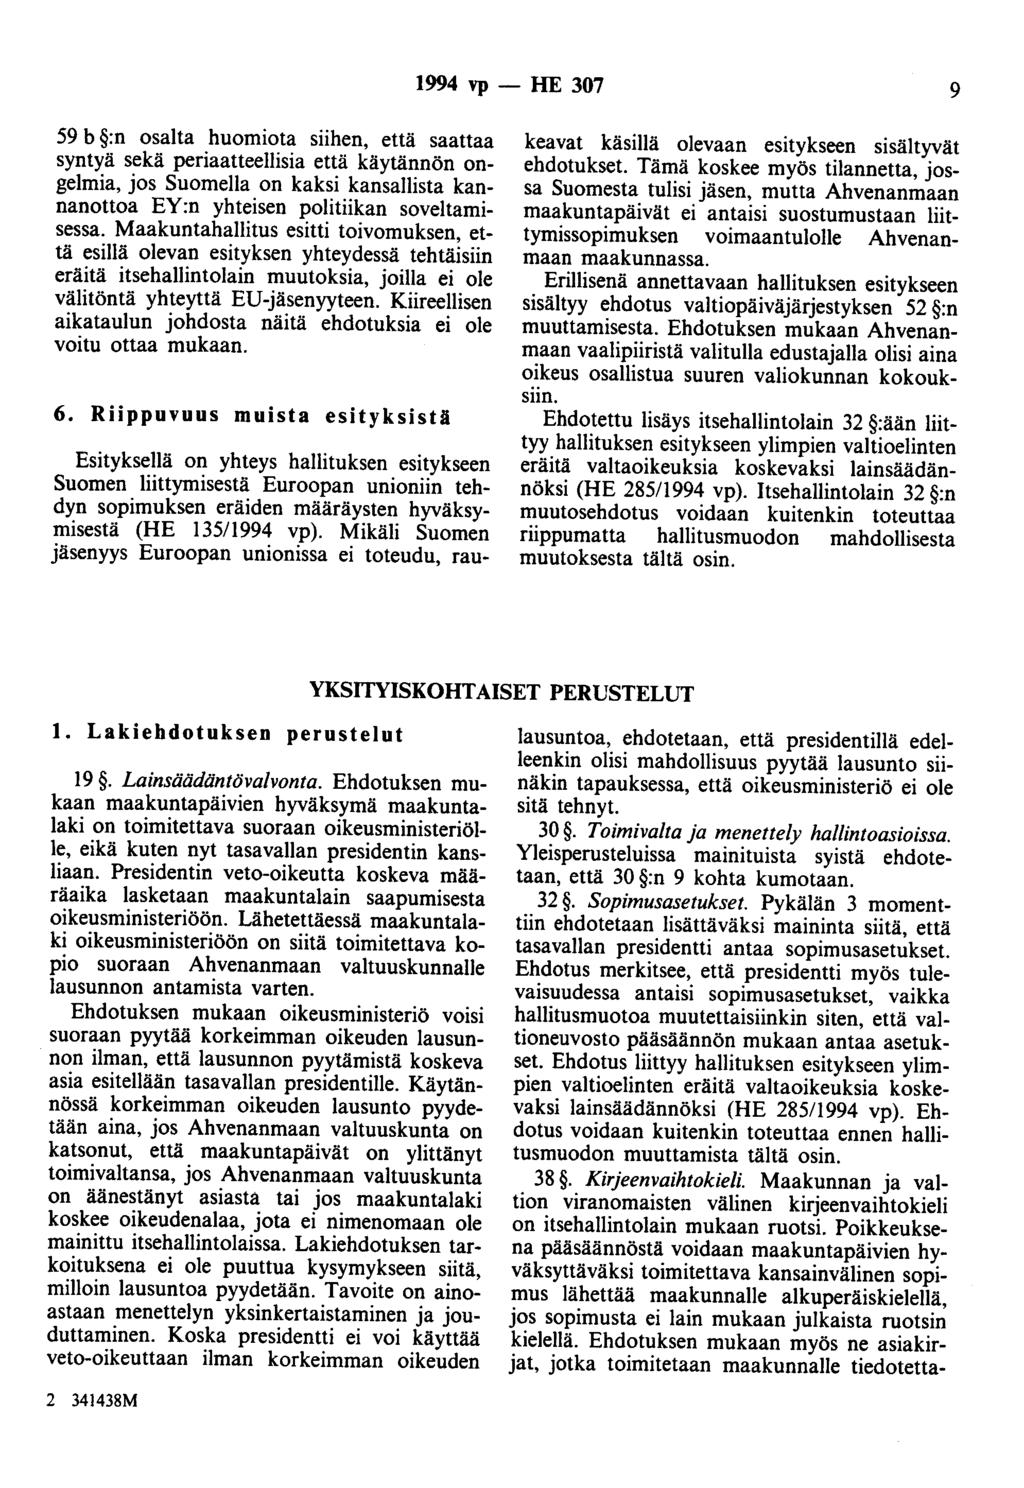 1994 vp- HE 307 9 59 b :n osalta huomiota siihen, että saattaa syntyä sekä periaatteellisia että käytännön ongelmia, jos Suomella on kaksi kansallista kannanottoa EY:n yhteisen politiikan